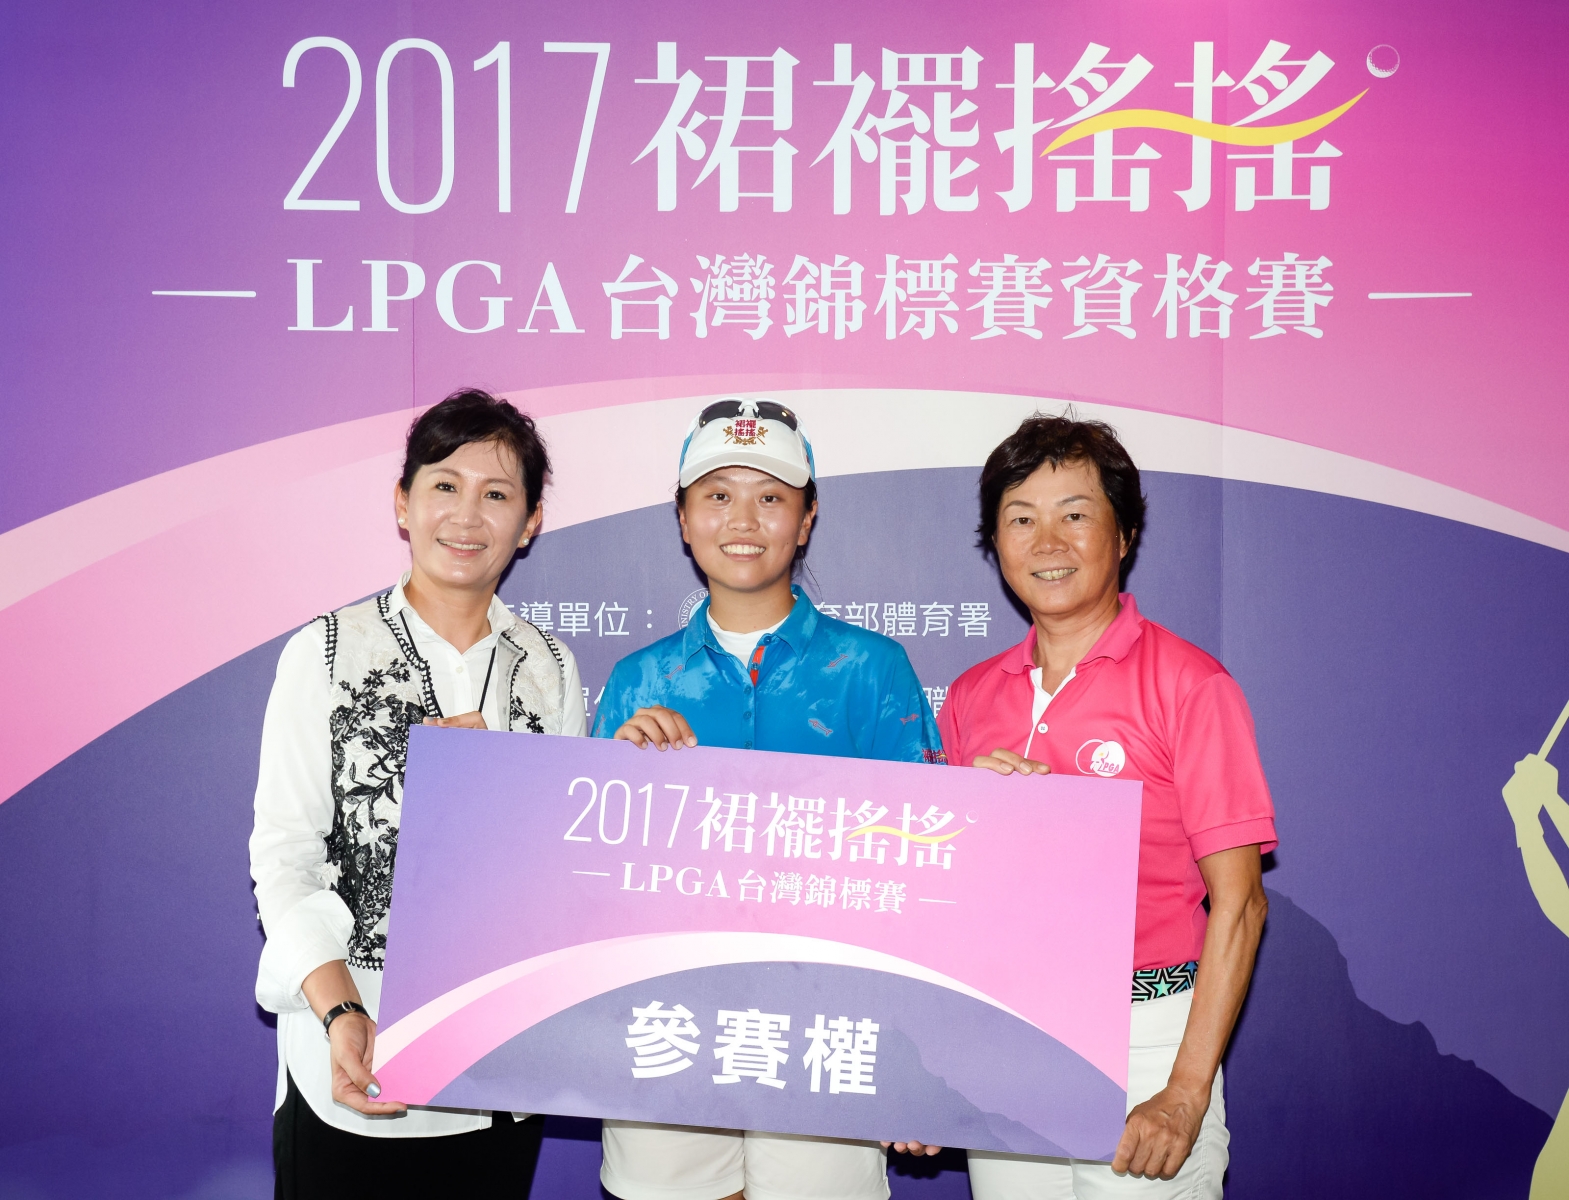 盧昕妤(中)從裙襬搖搖基金會董事張韋文(左)與女子高爾夫協會理事長鄭美琦(右)手中接下參賽資格。